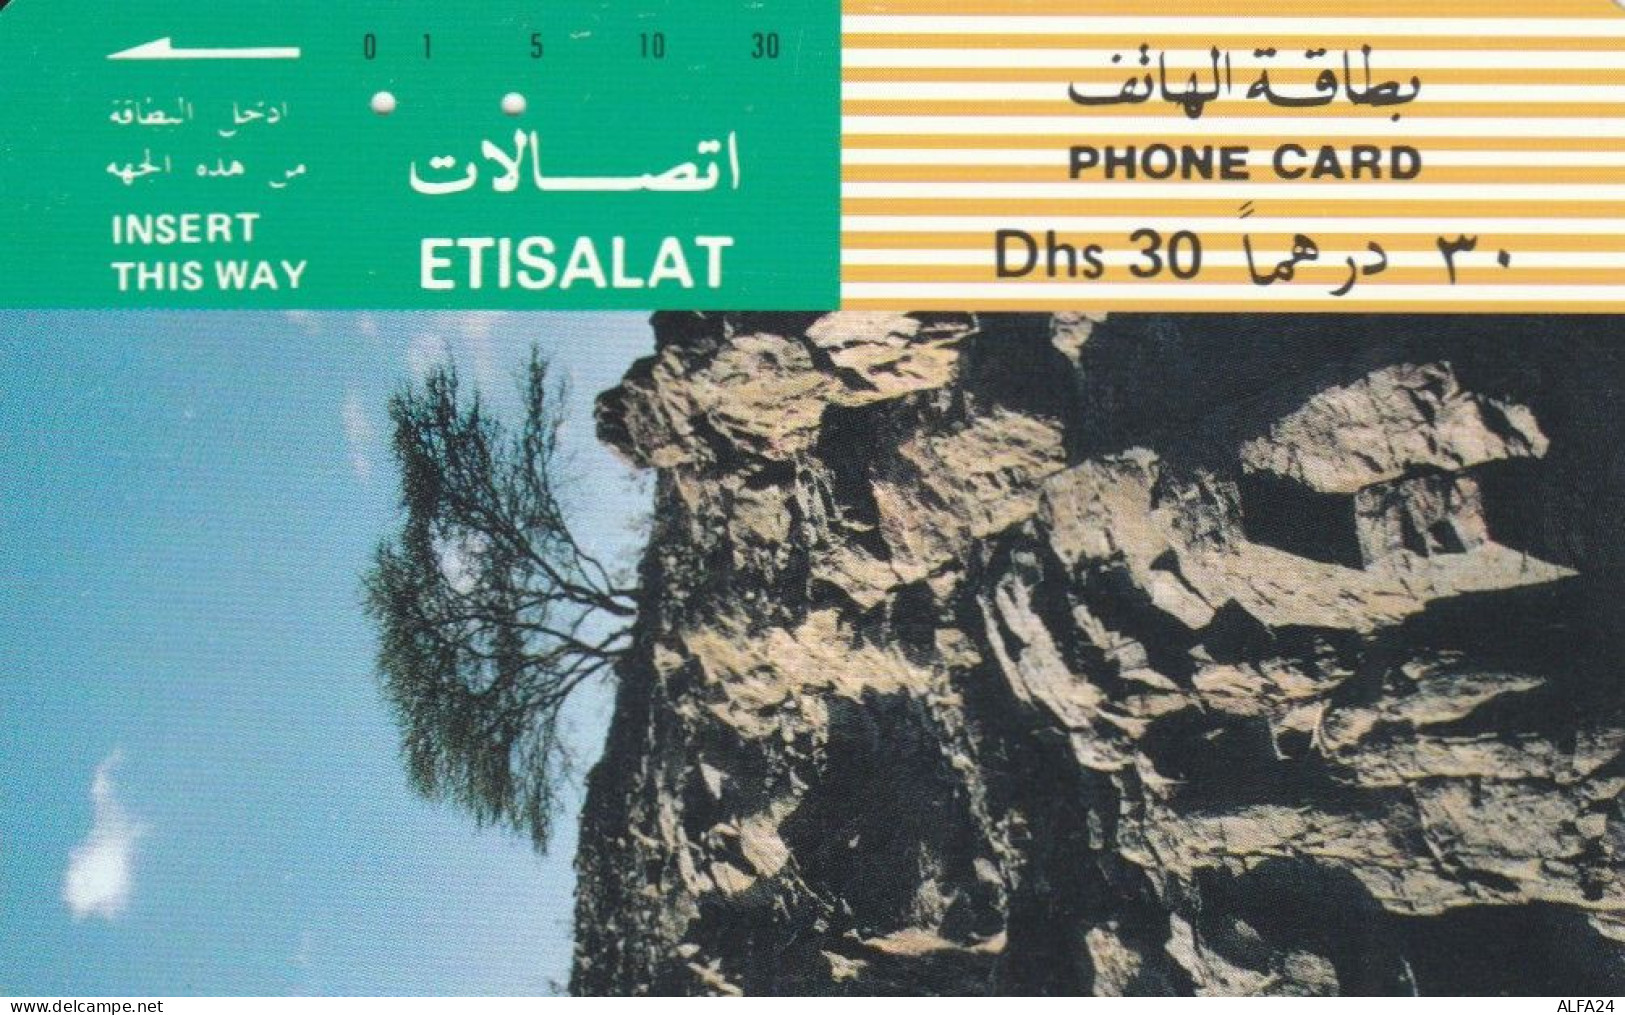 PHONE CARD EMIRATI ARABI (E57.11.2 - Ver. Arab. Emirate